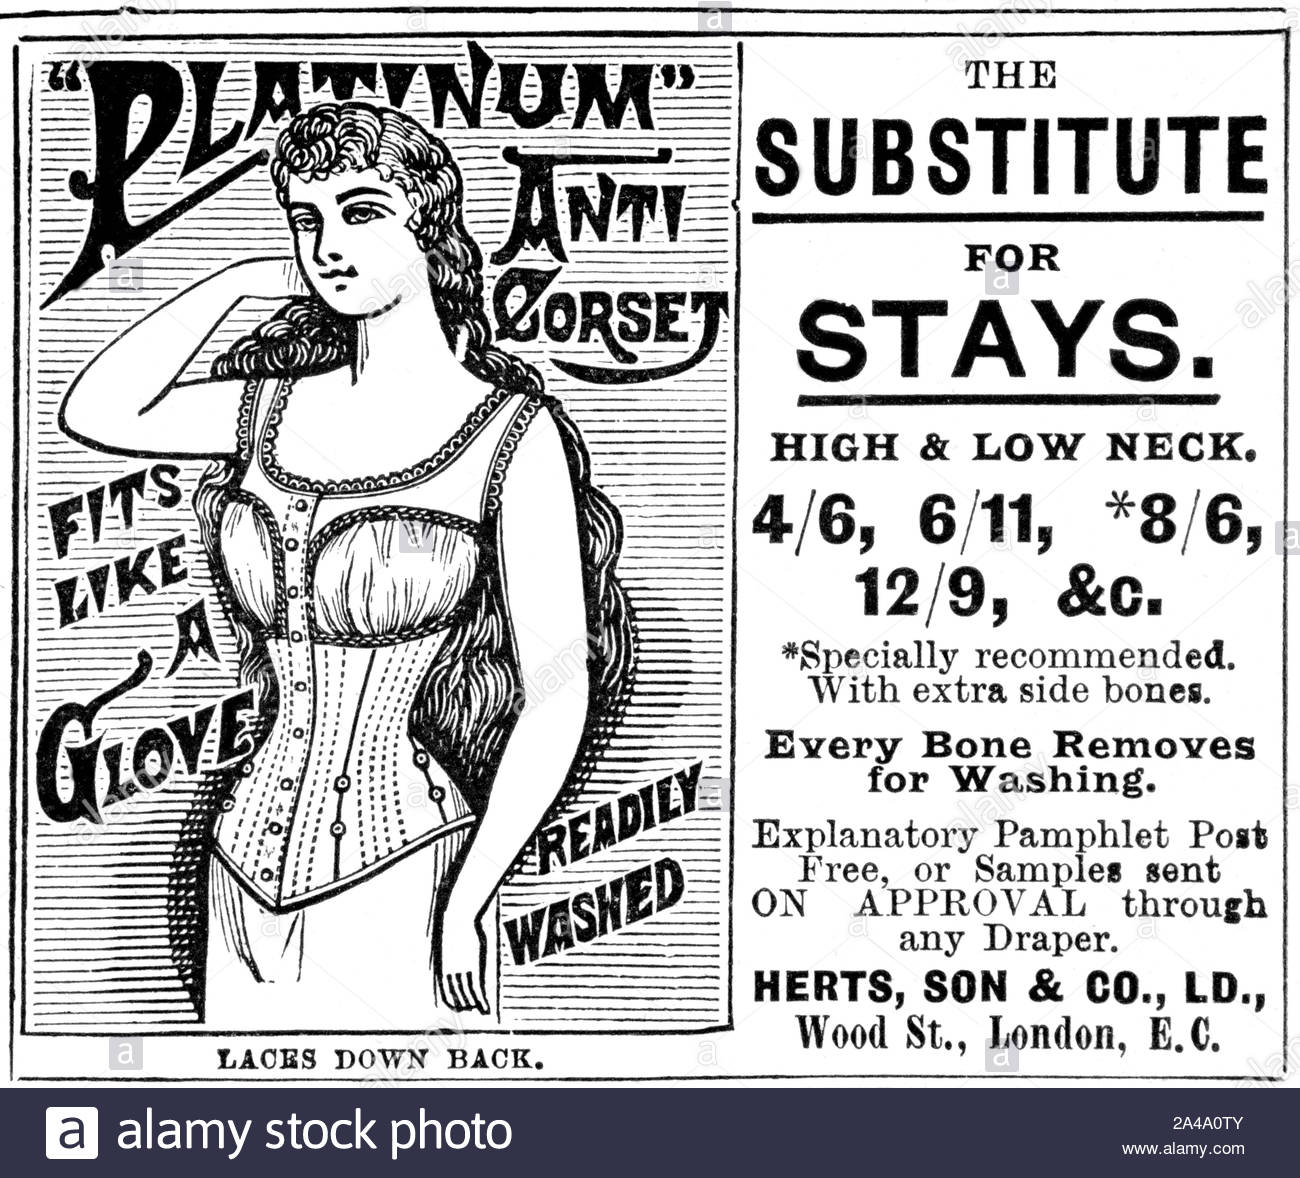 Era Vittoriana, Platino anti corsetto, pubblicità d'epoca dal 1895 Foto Stock